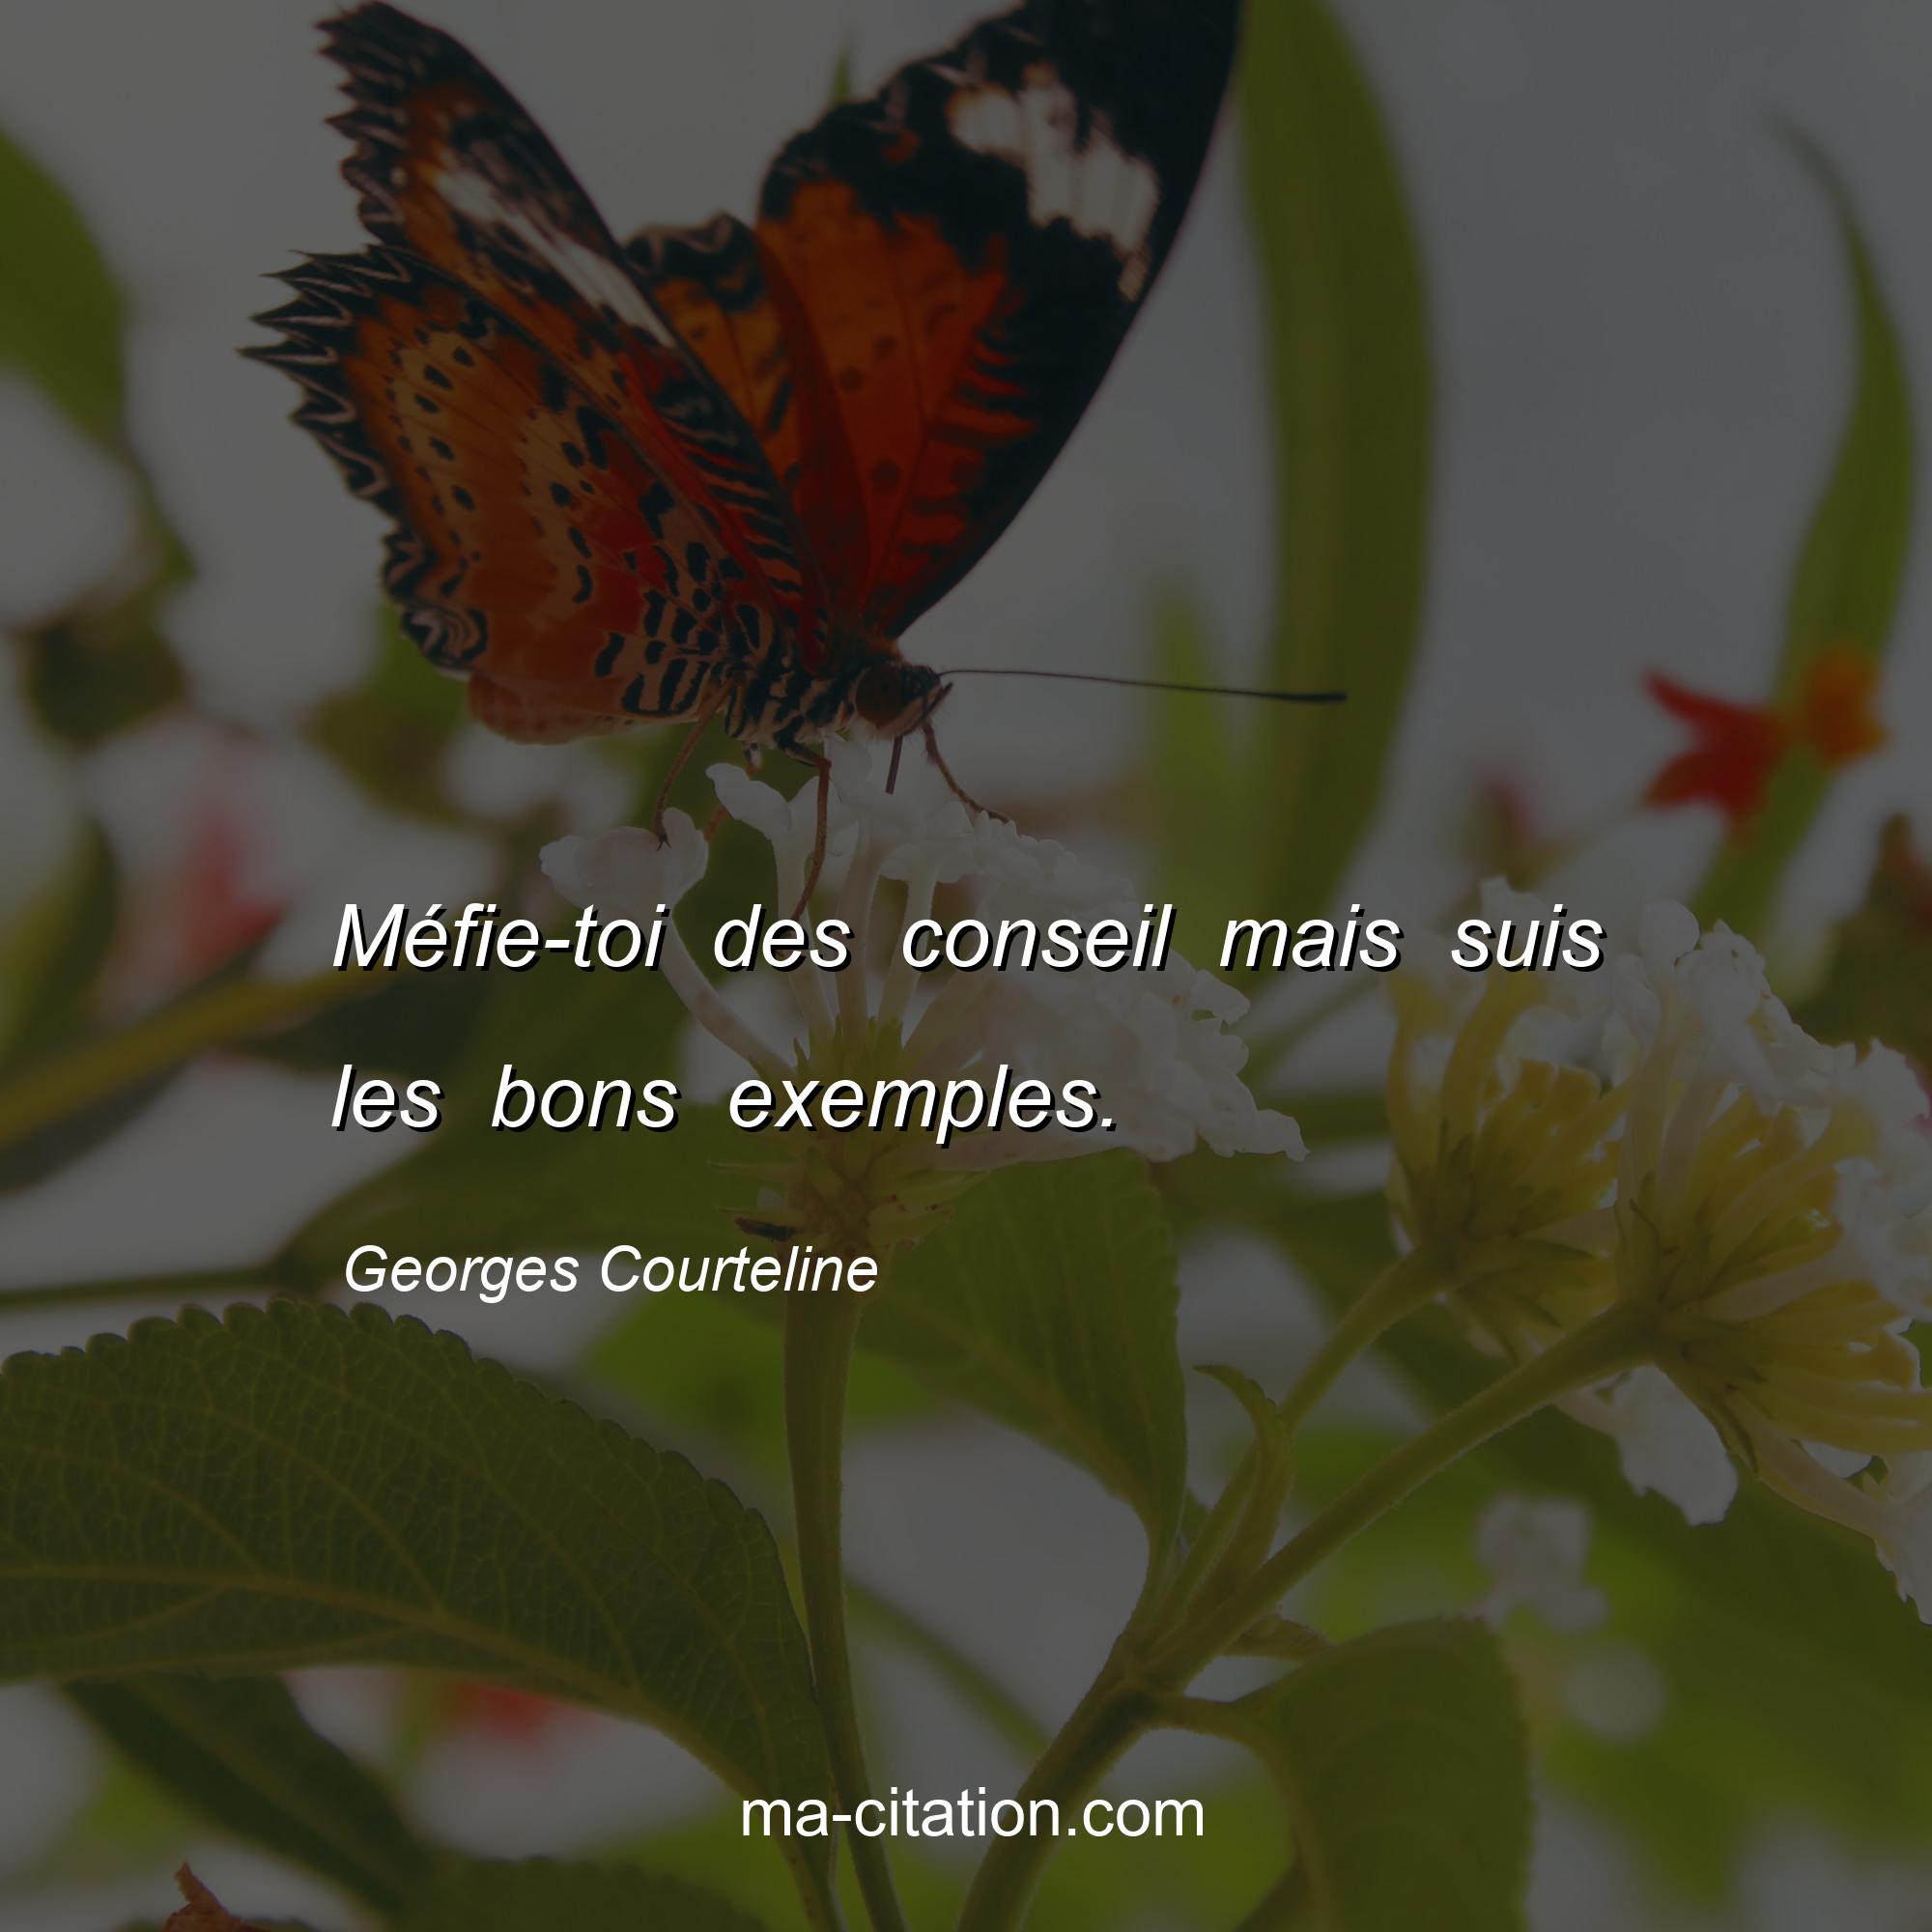 Georges Courteline : Méfie-toi des conseil mais suis les bons exemples.